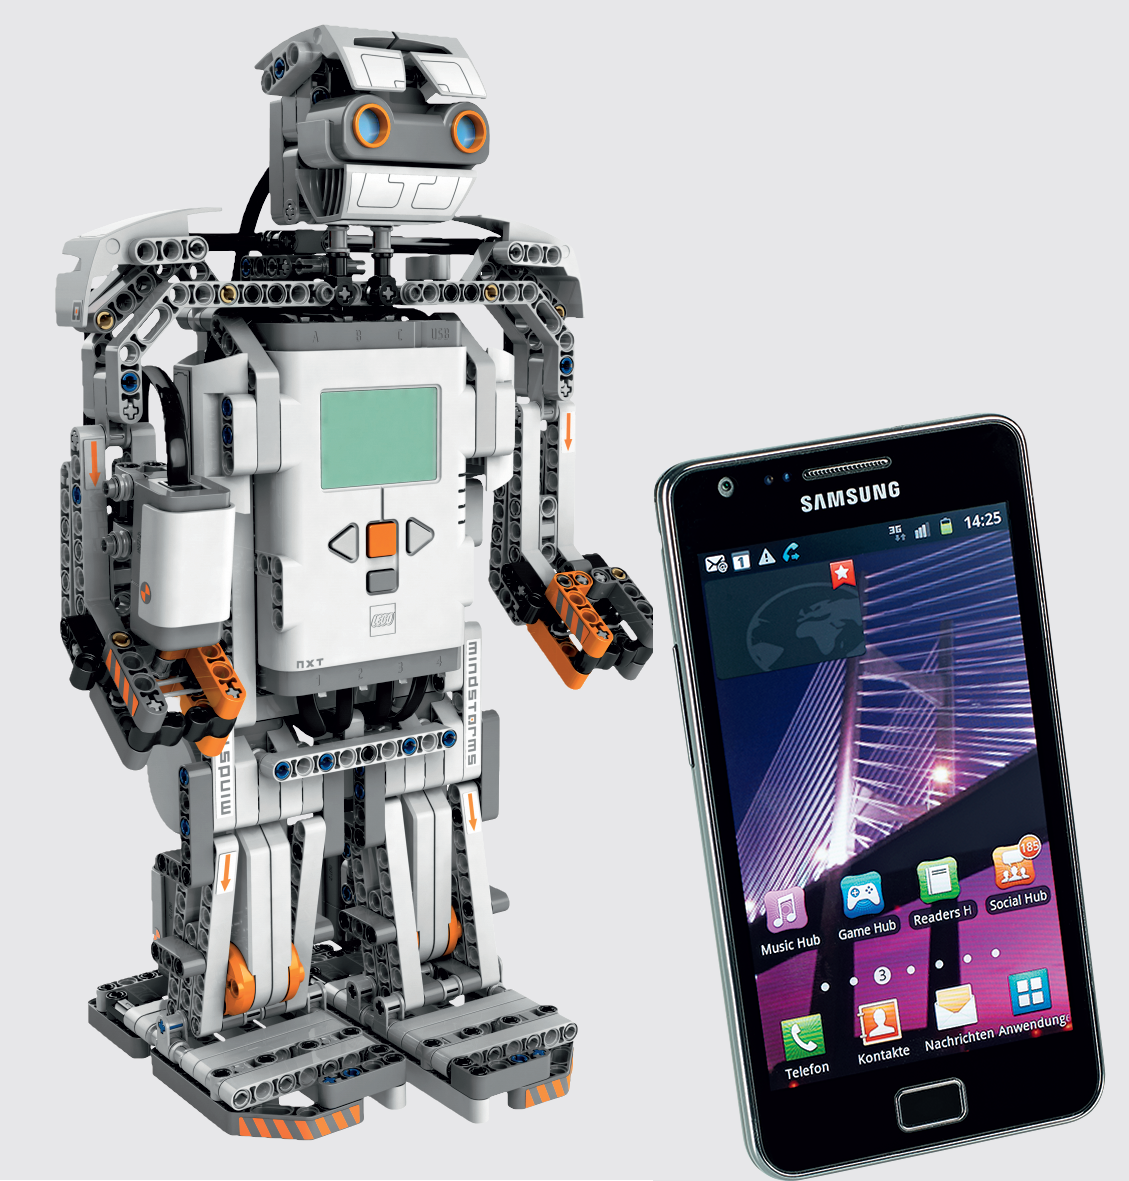 Роботами Mindstorms можно управлять голосовыми командами со смартфона